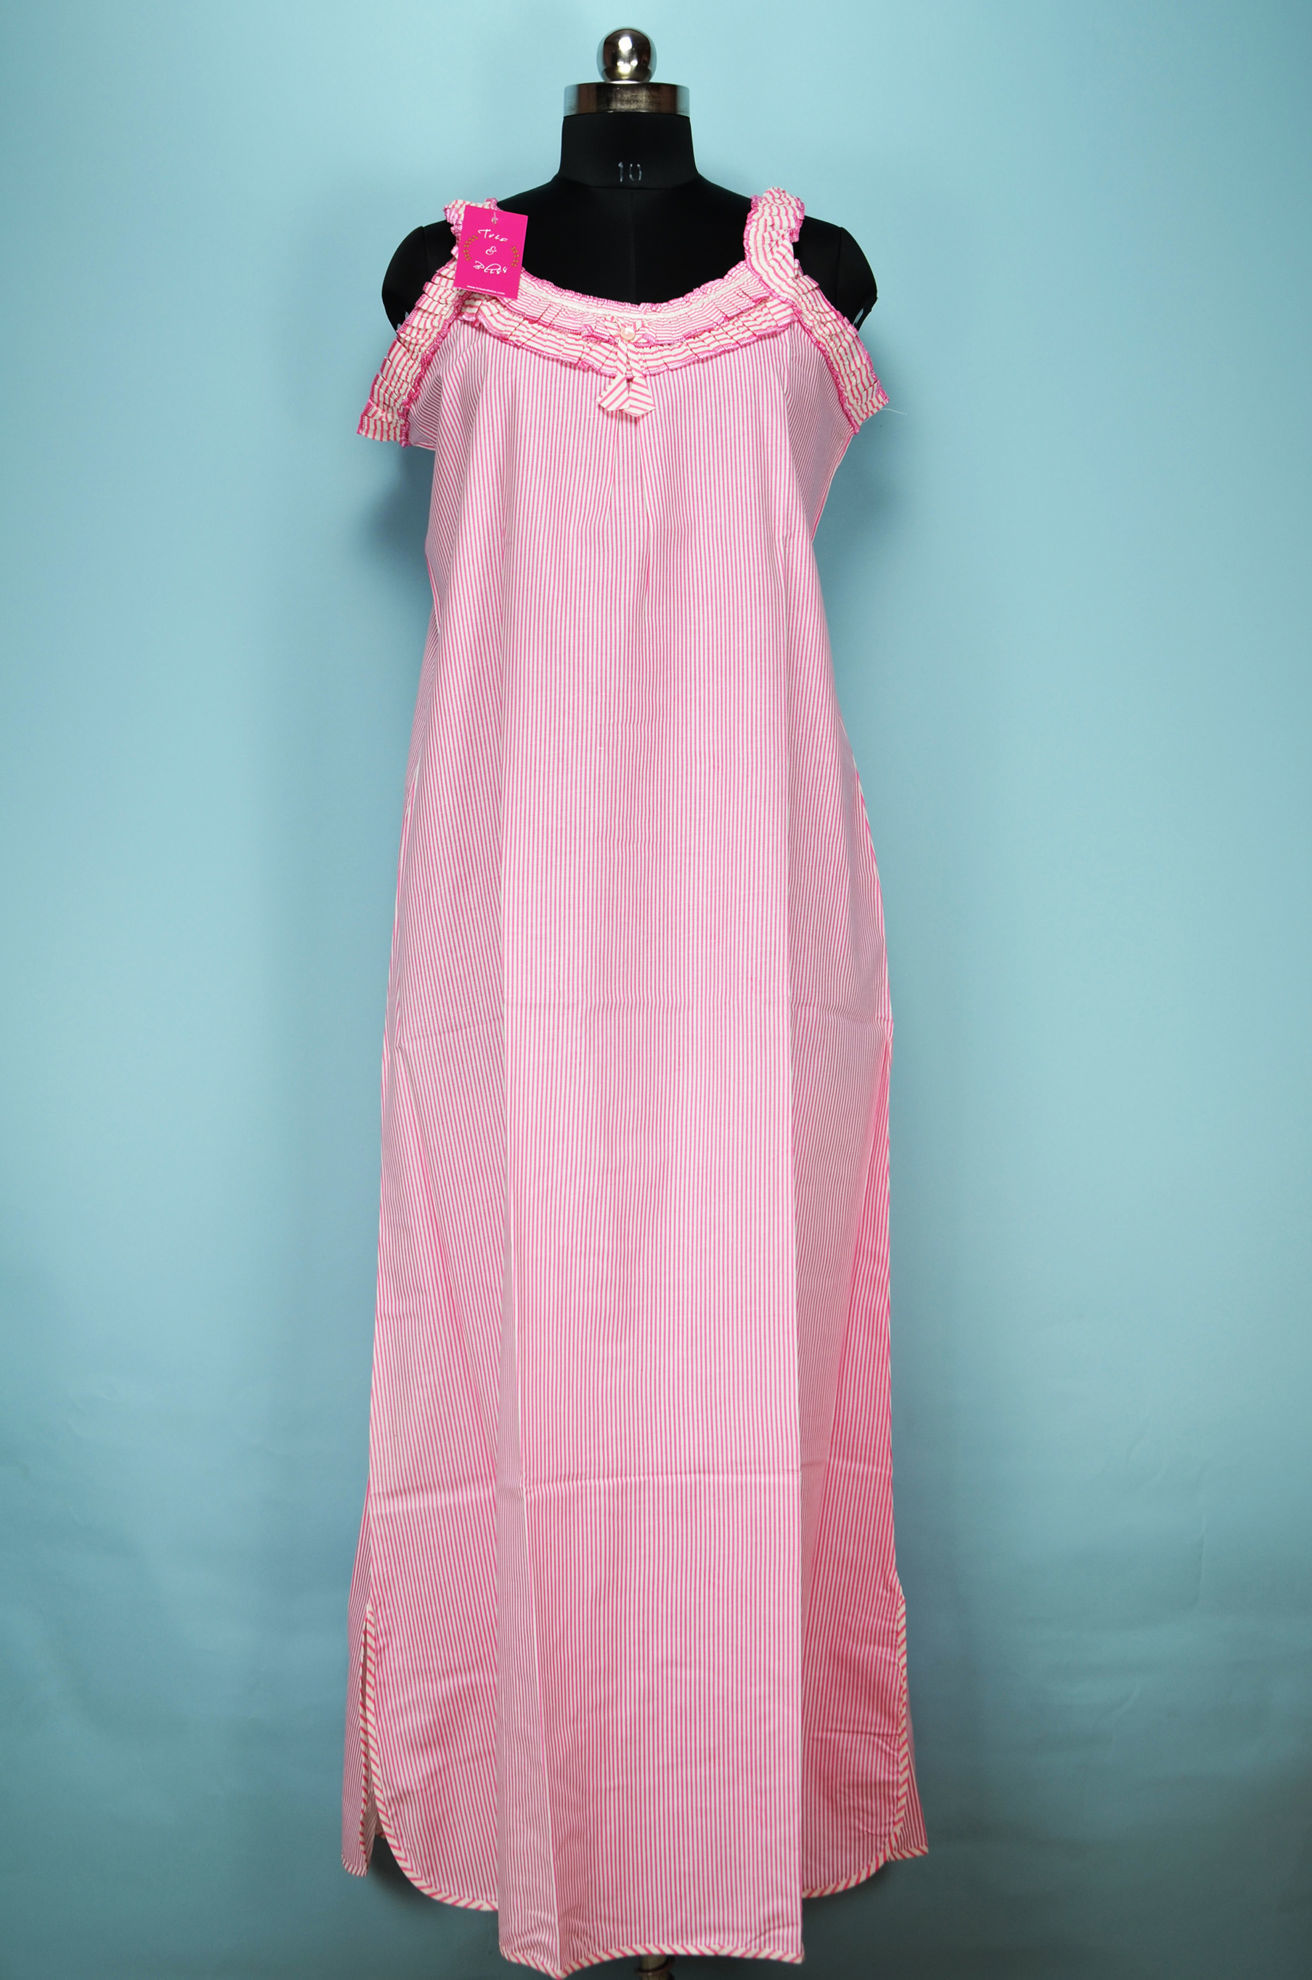 Aria Women's and Women's Plus Sleeveless 100% Cotton Nightgown, Sizes S-5X  - Walmart.com